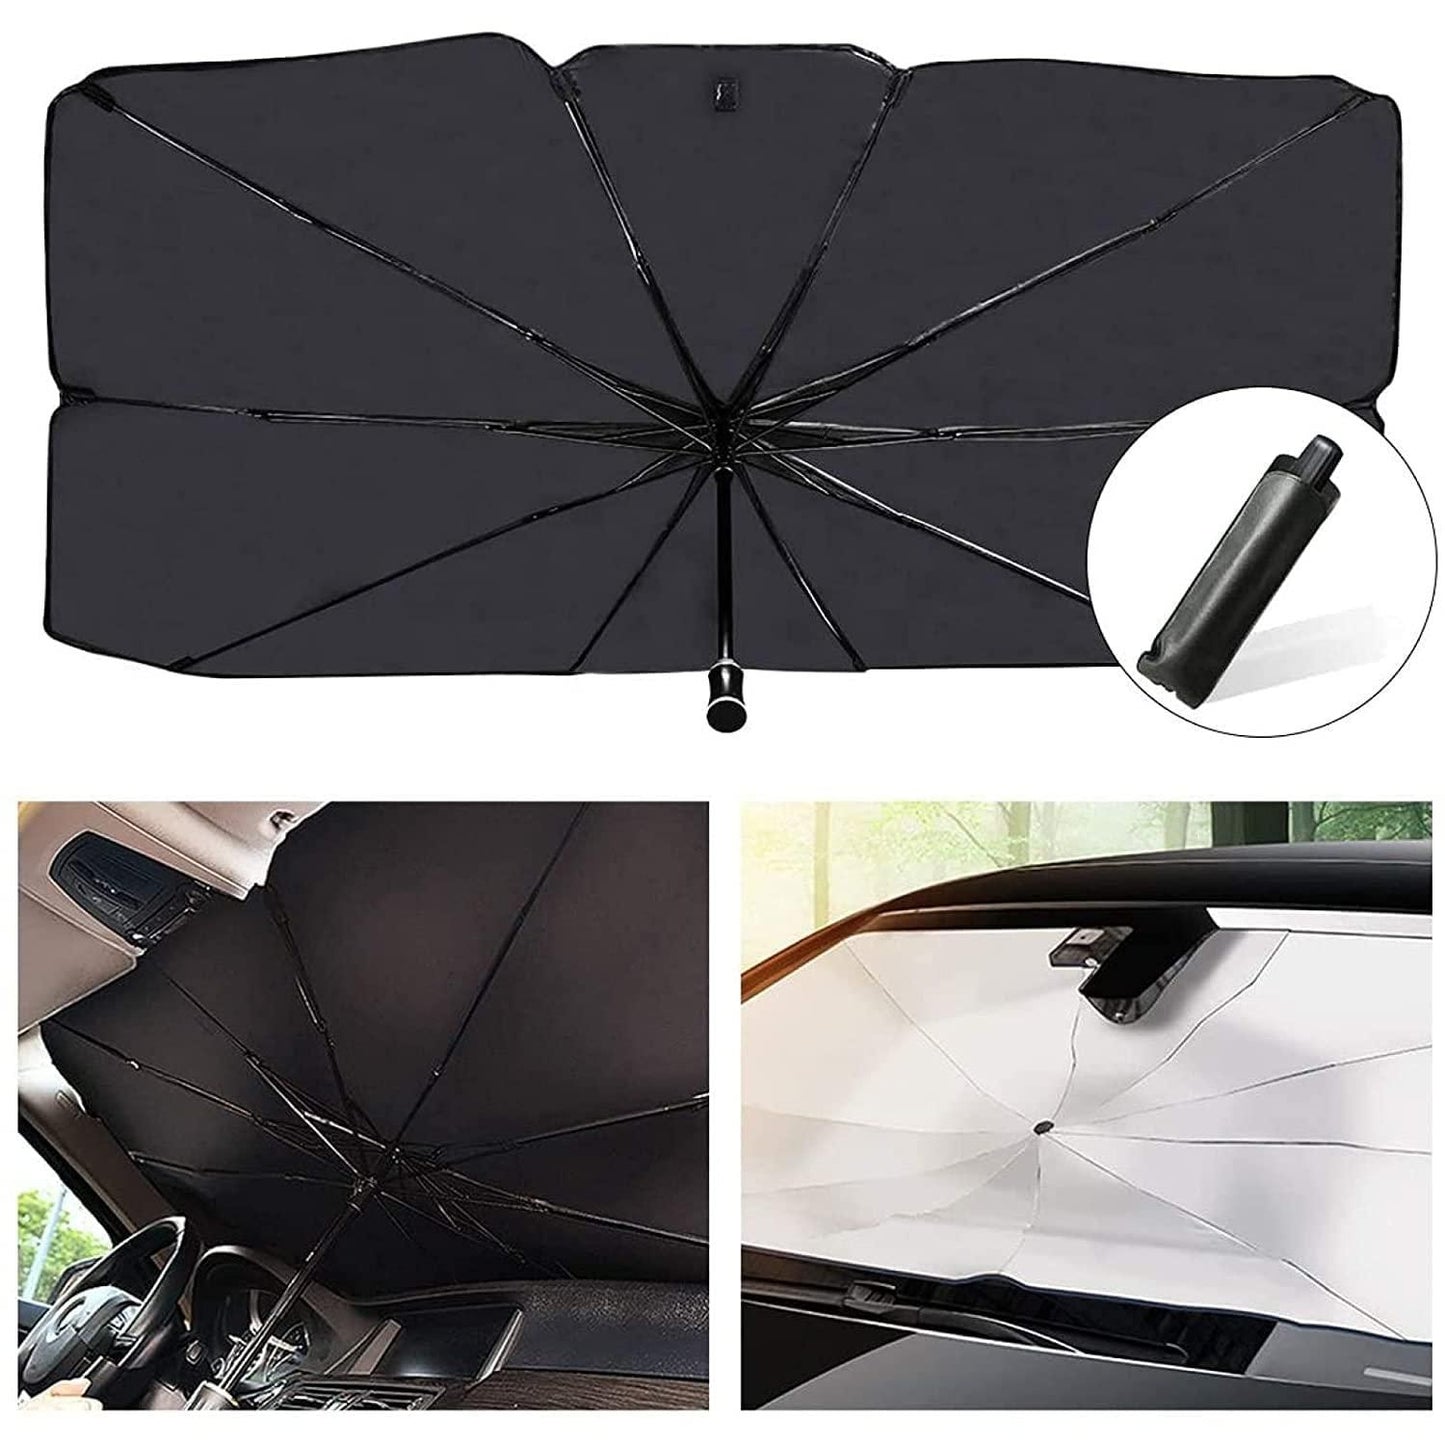 Car Sun Shade Protection Umbrella